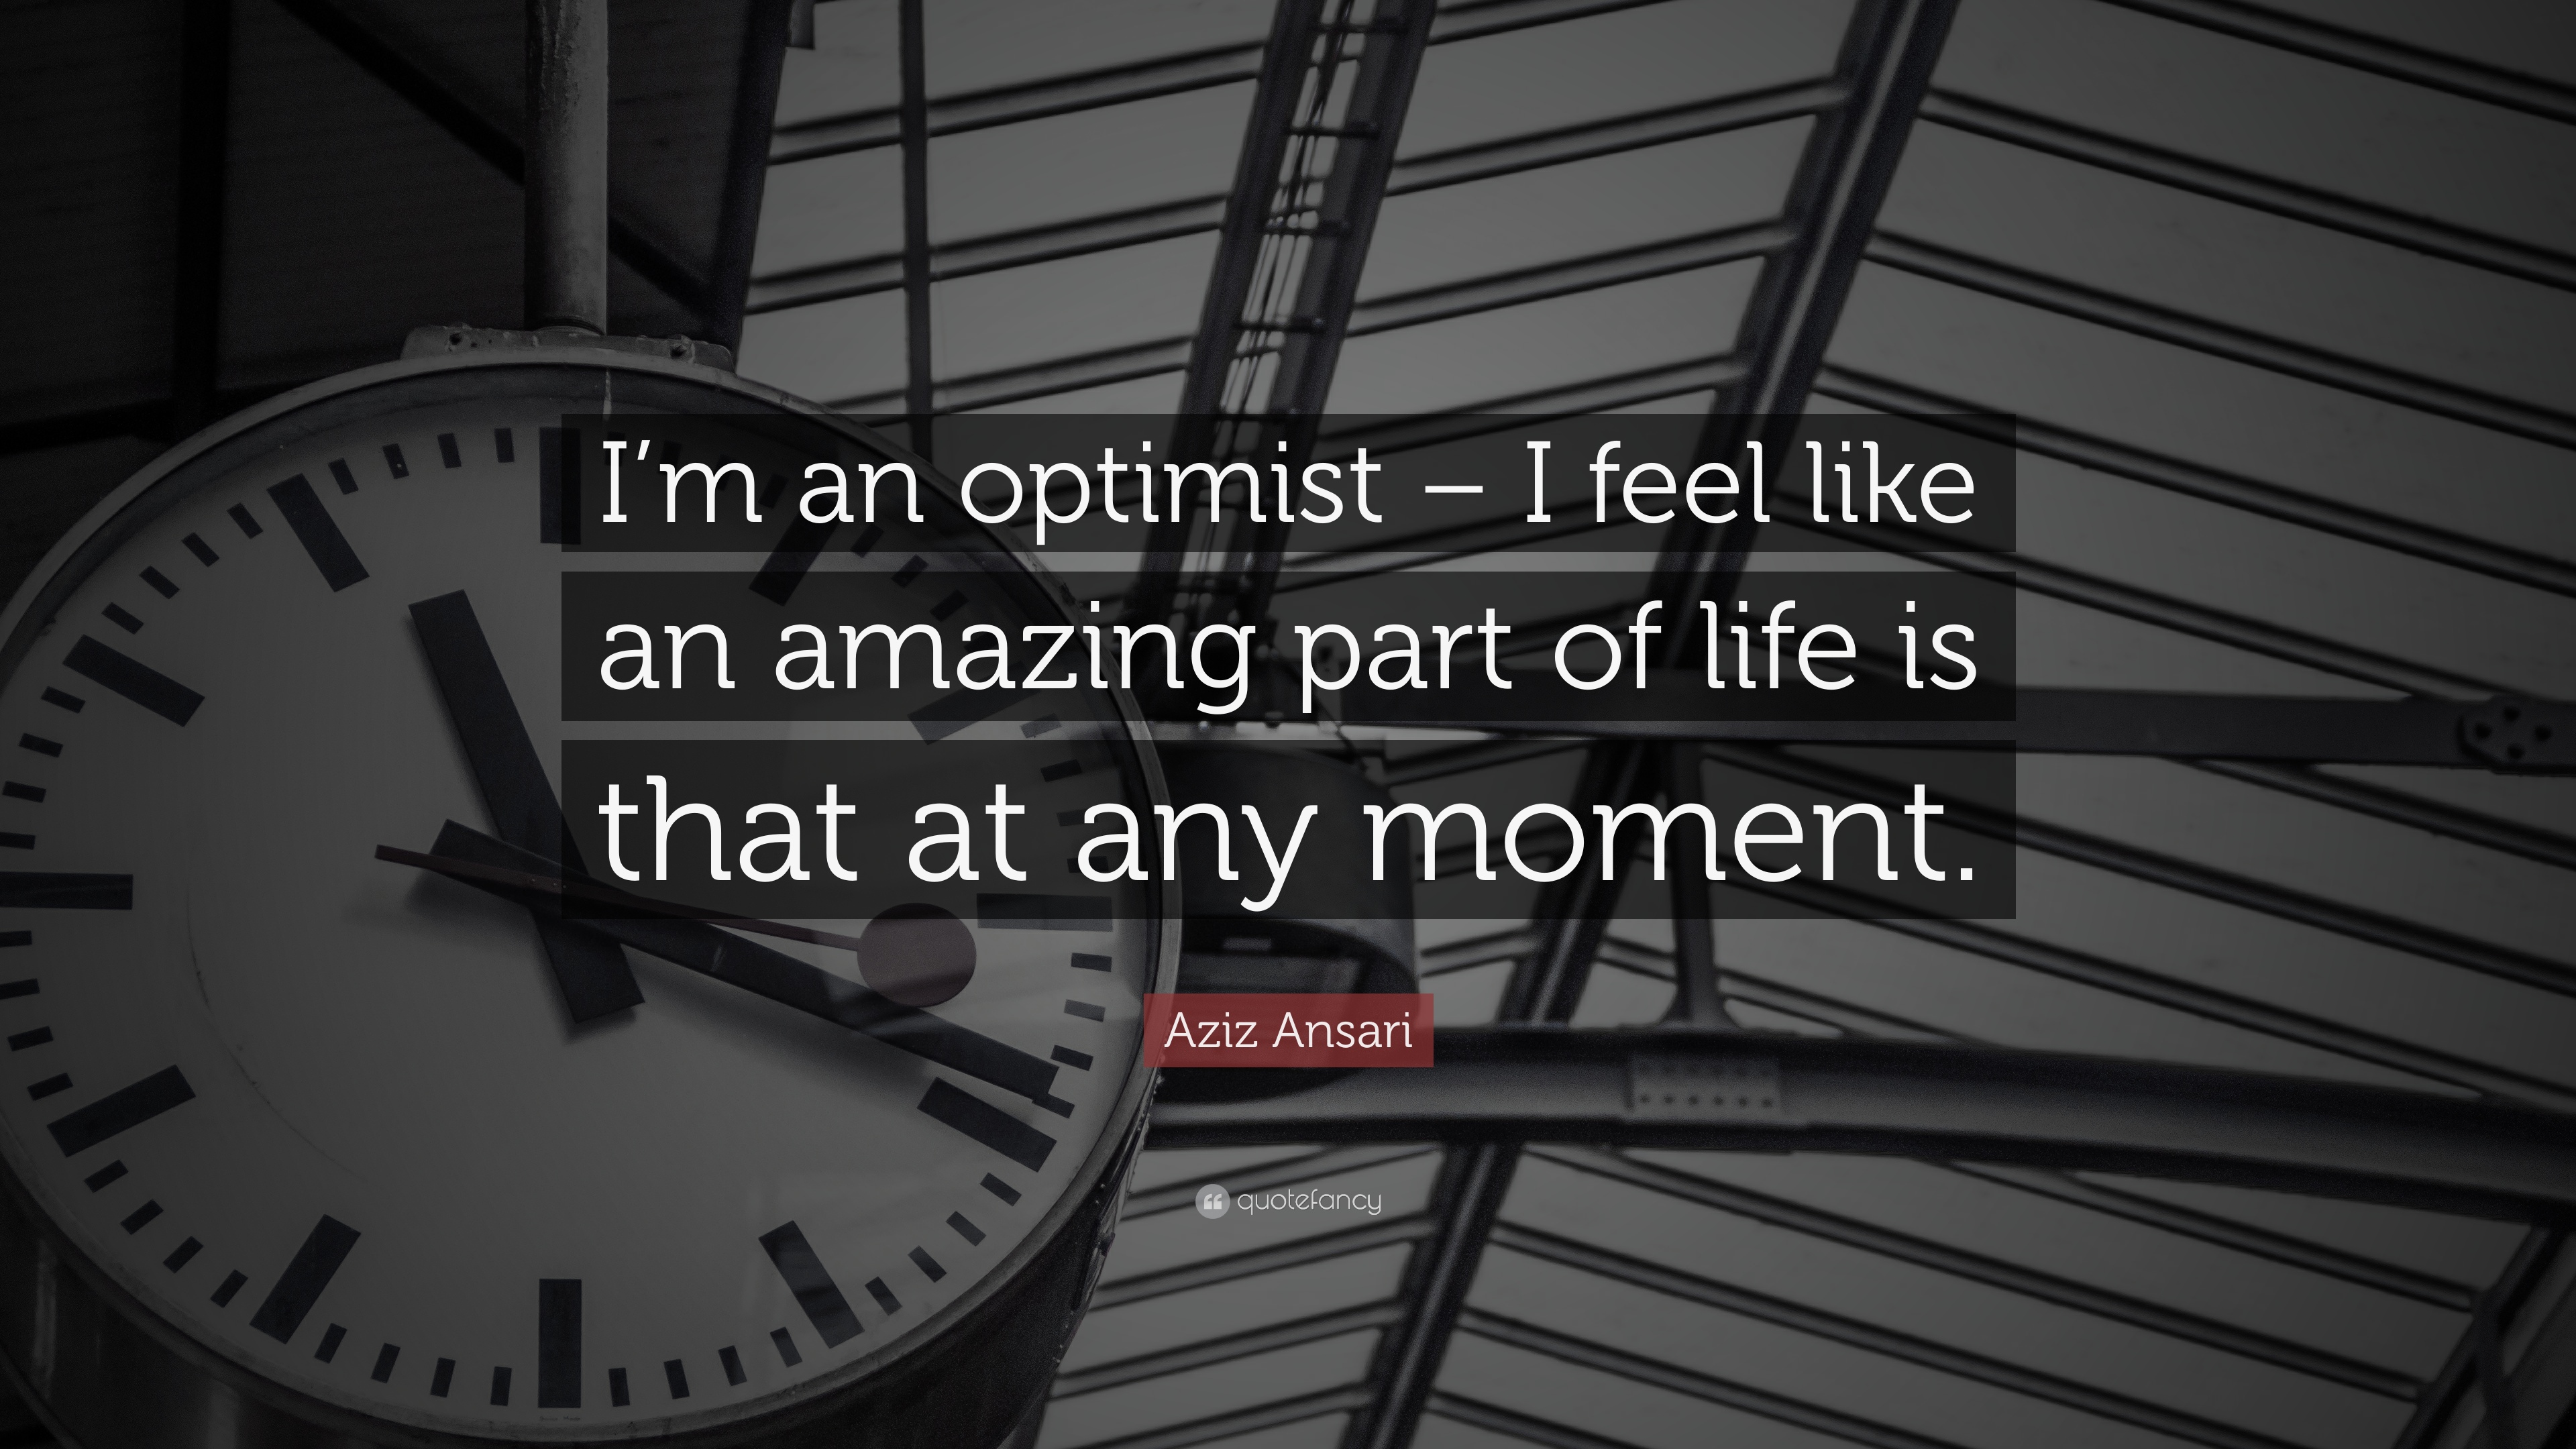 Aziz Ansari Quote: “I'm an optimist